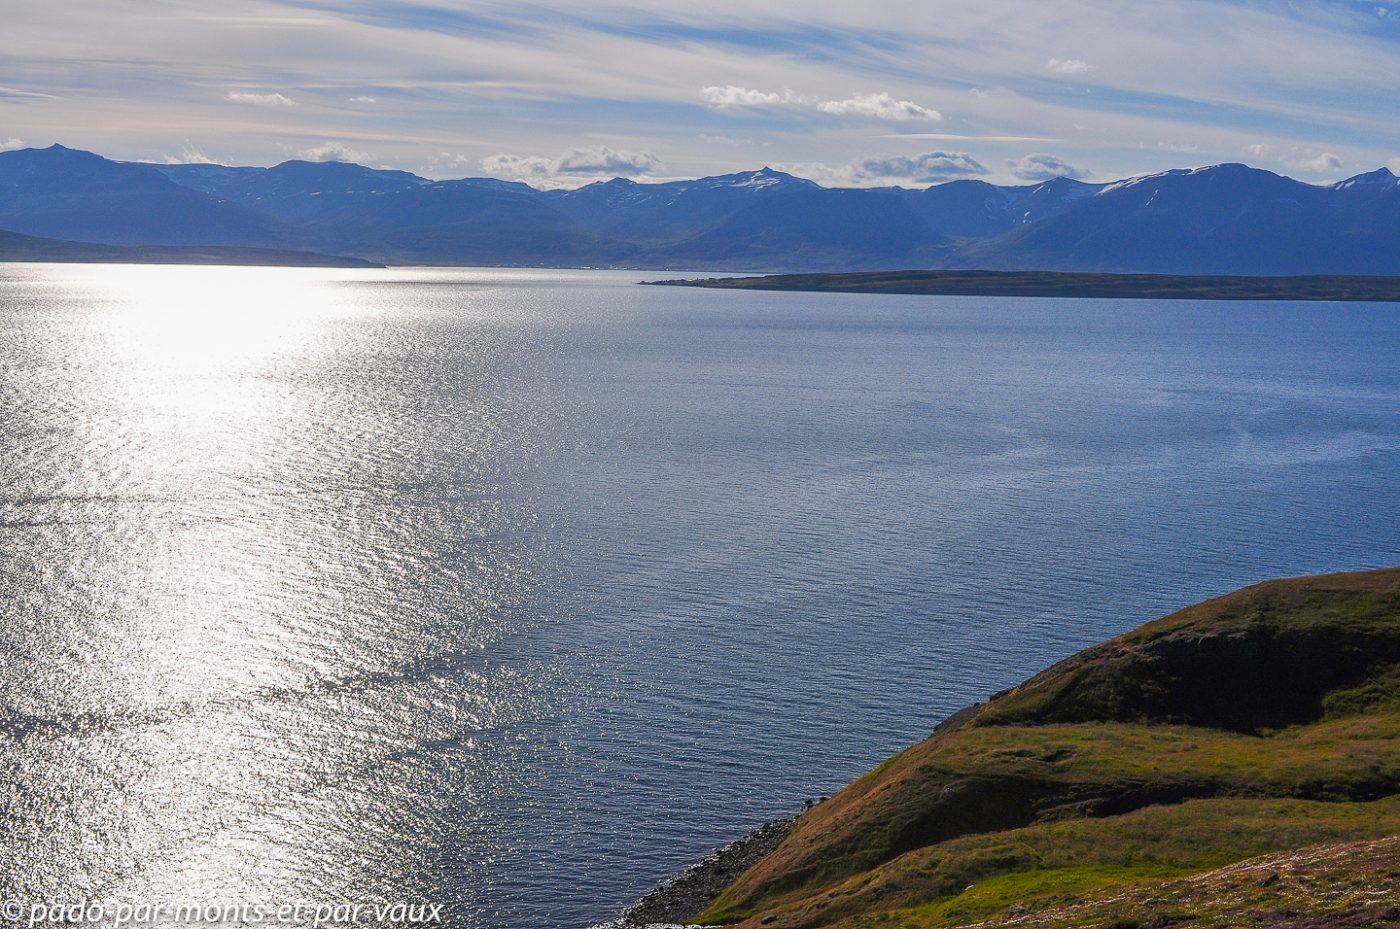  Fjord d'Akureyri